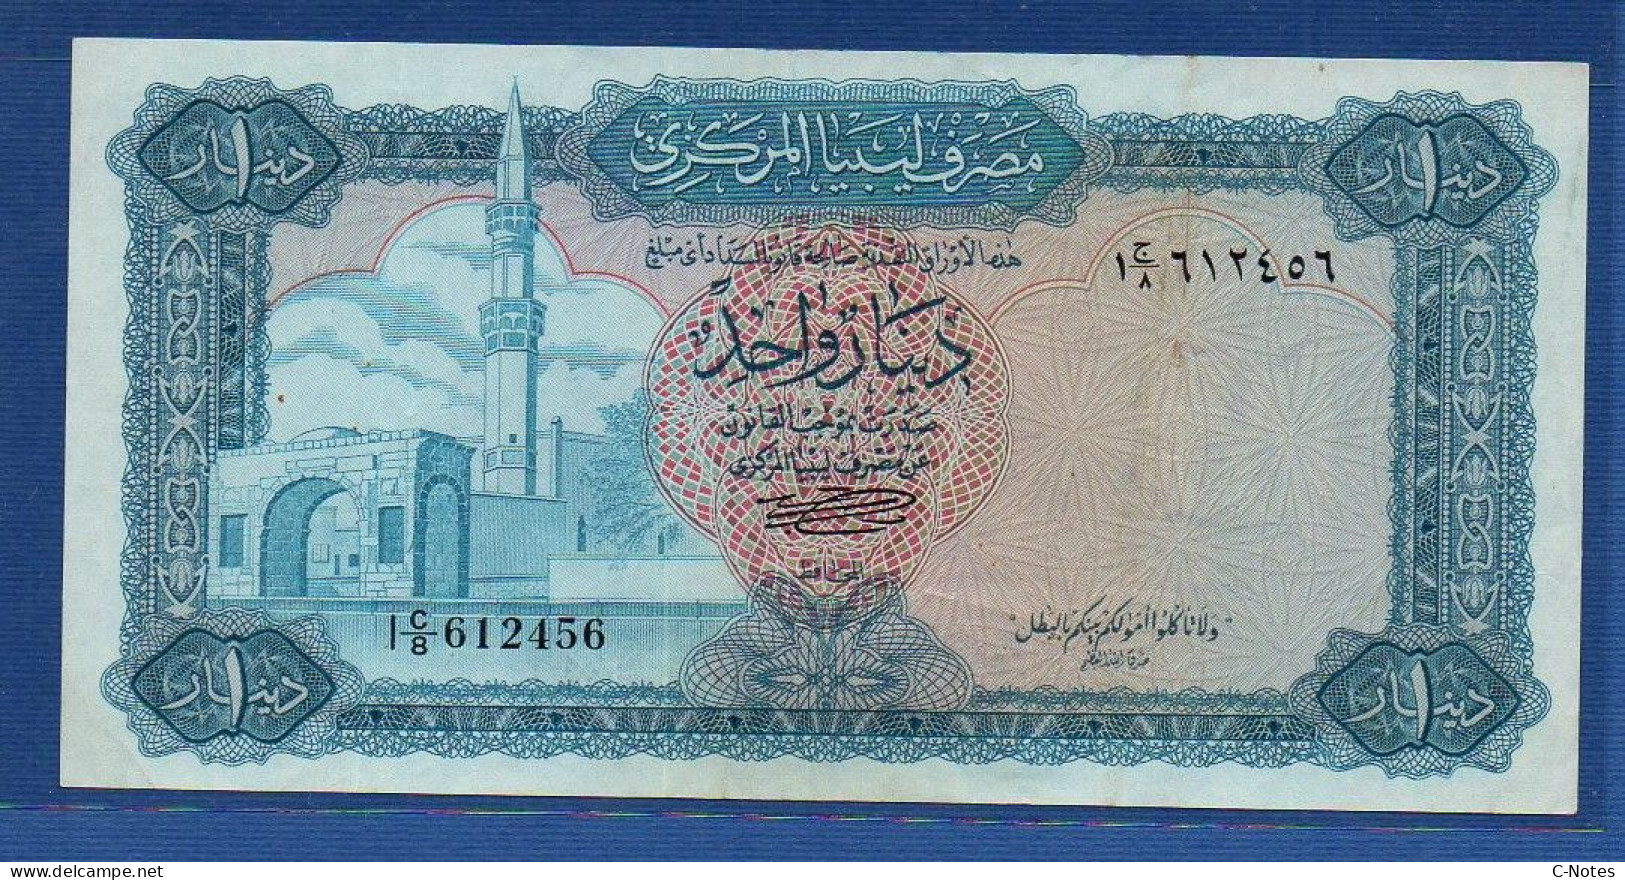 LIBYA - P.35b – 1 Pound 1972 AVF, S/n I C/8 612456 - Libye